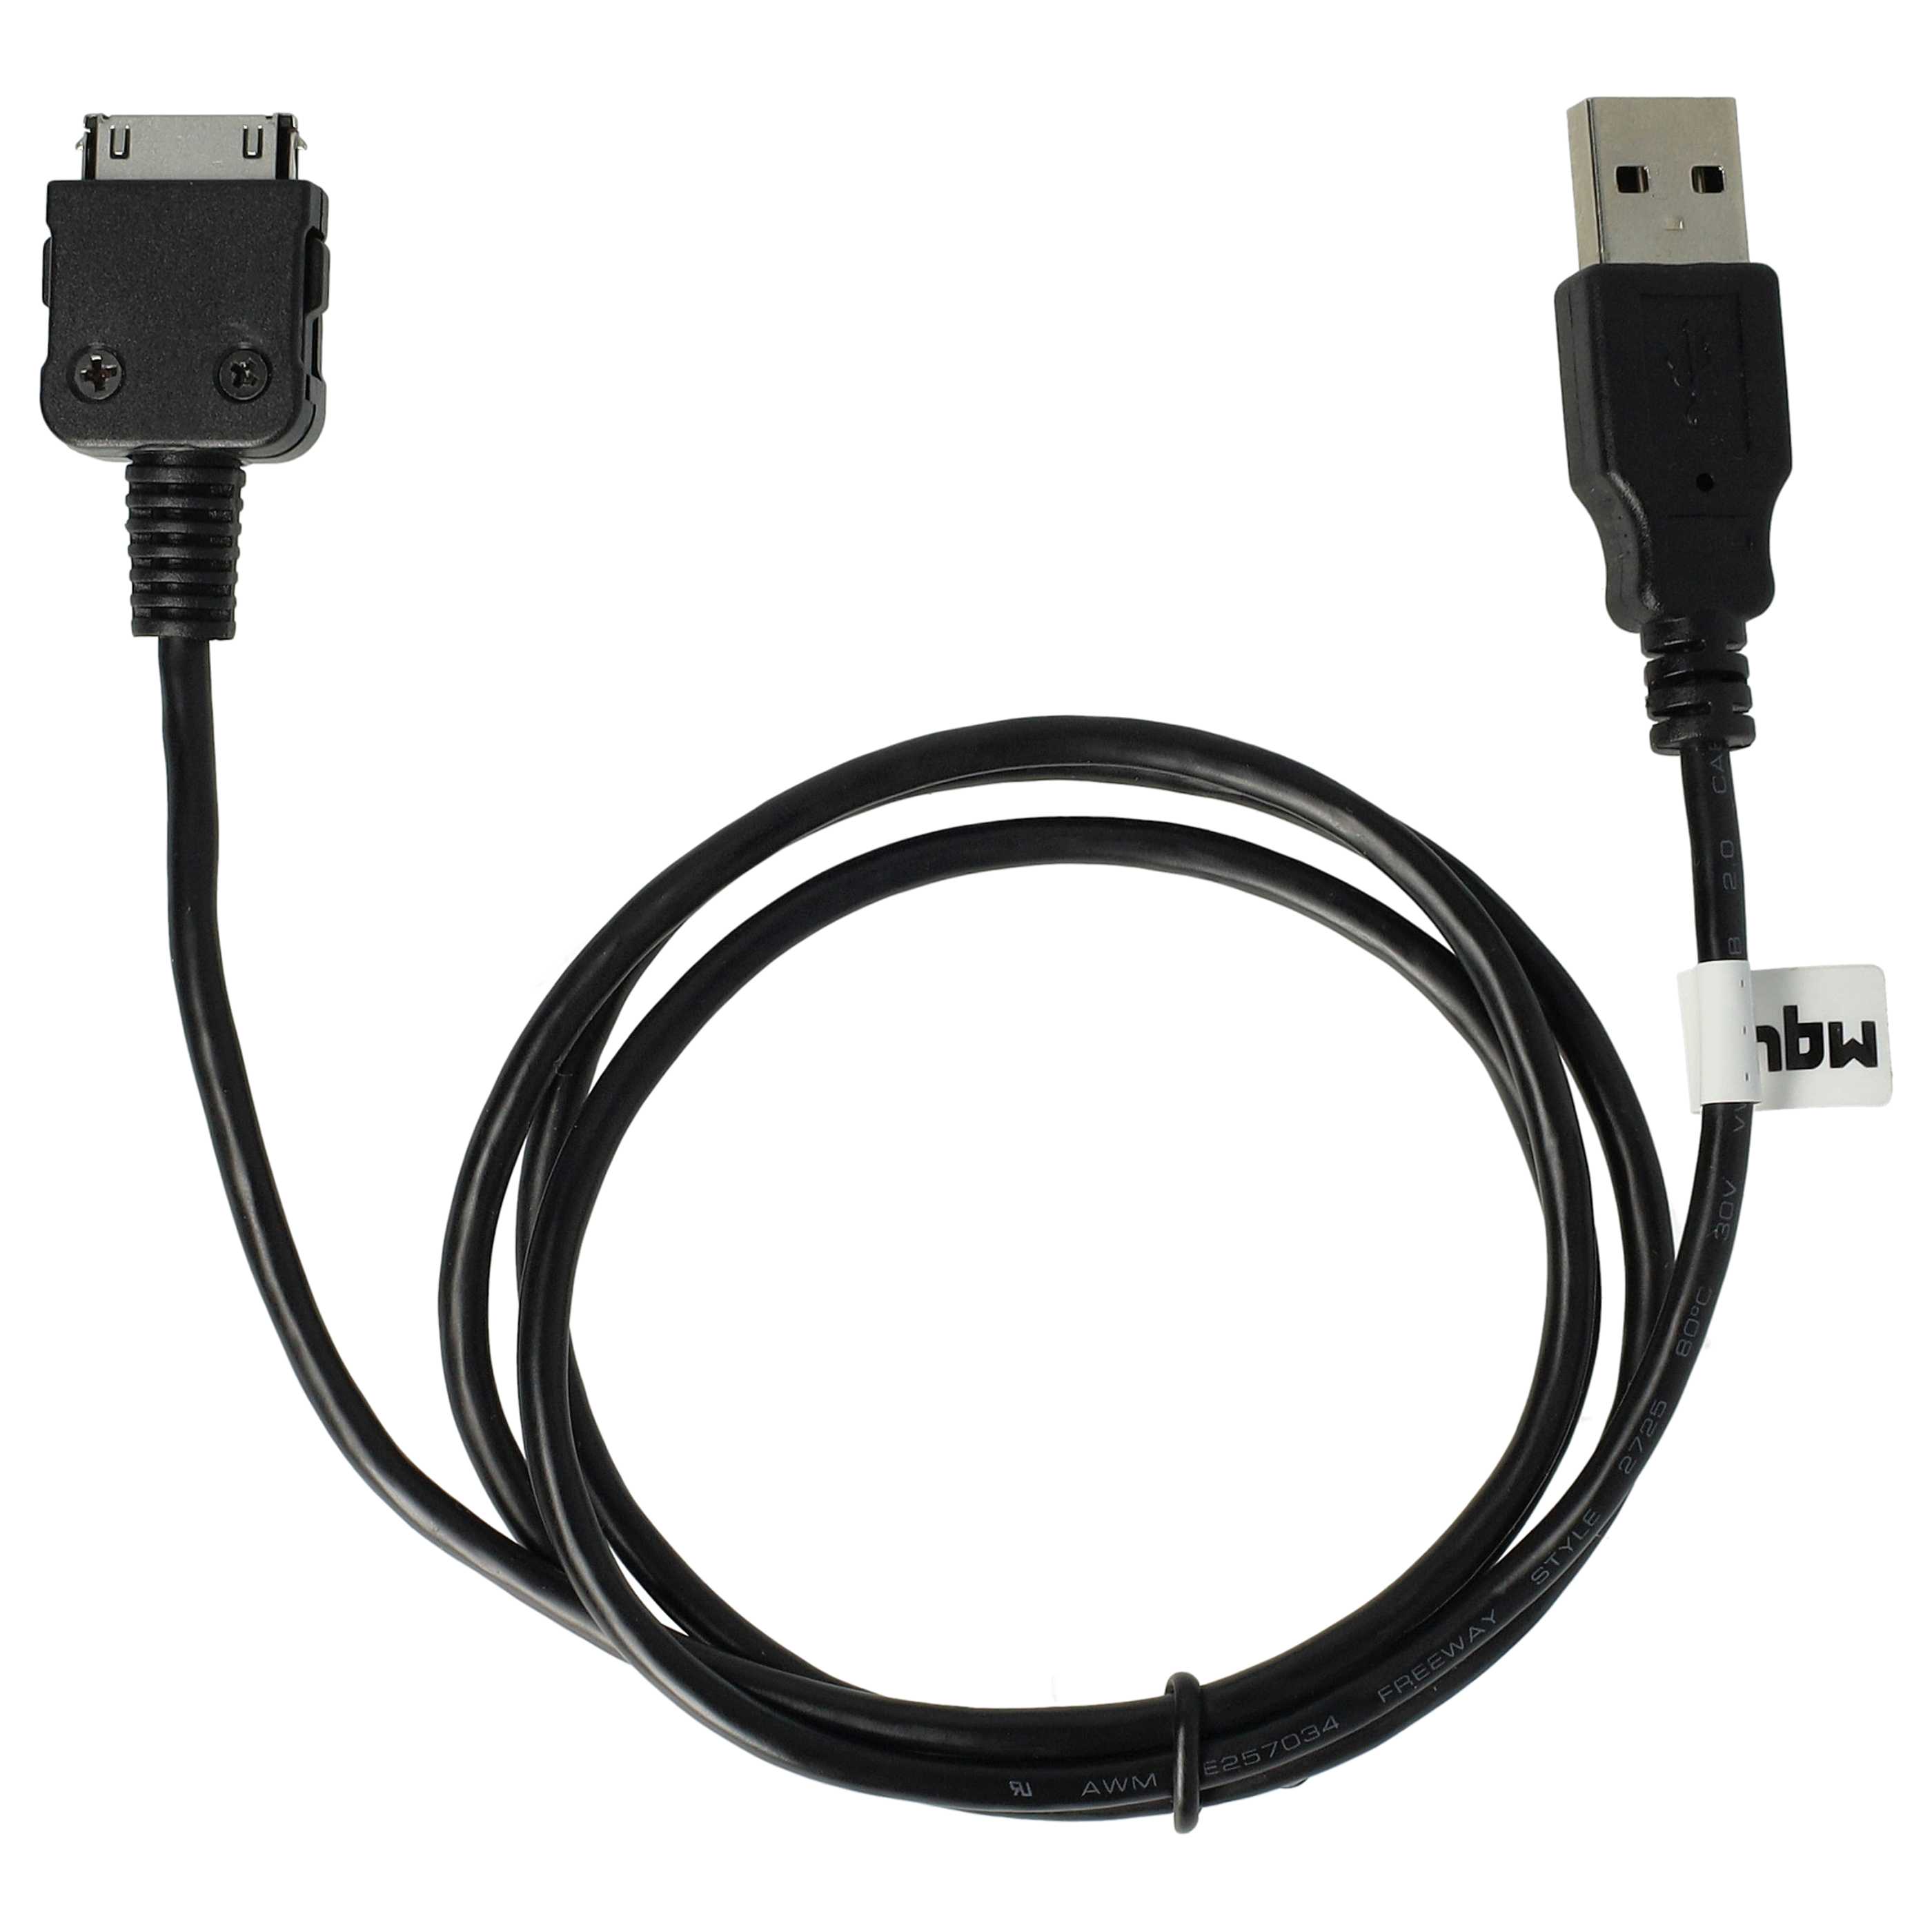 USB Datenkabel passend für Iriver H10 1GB u.a., 100 cm